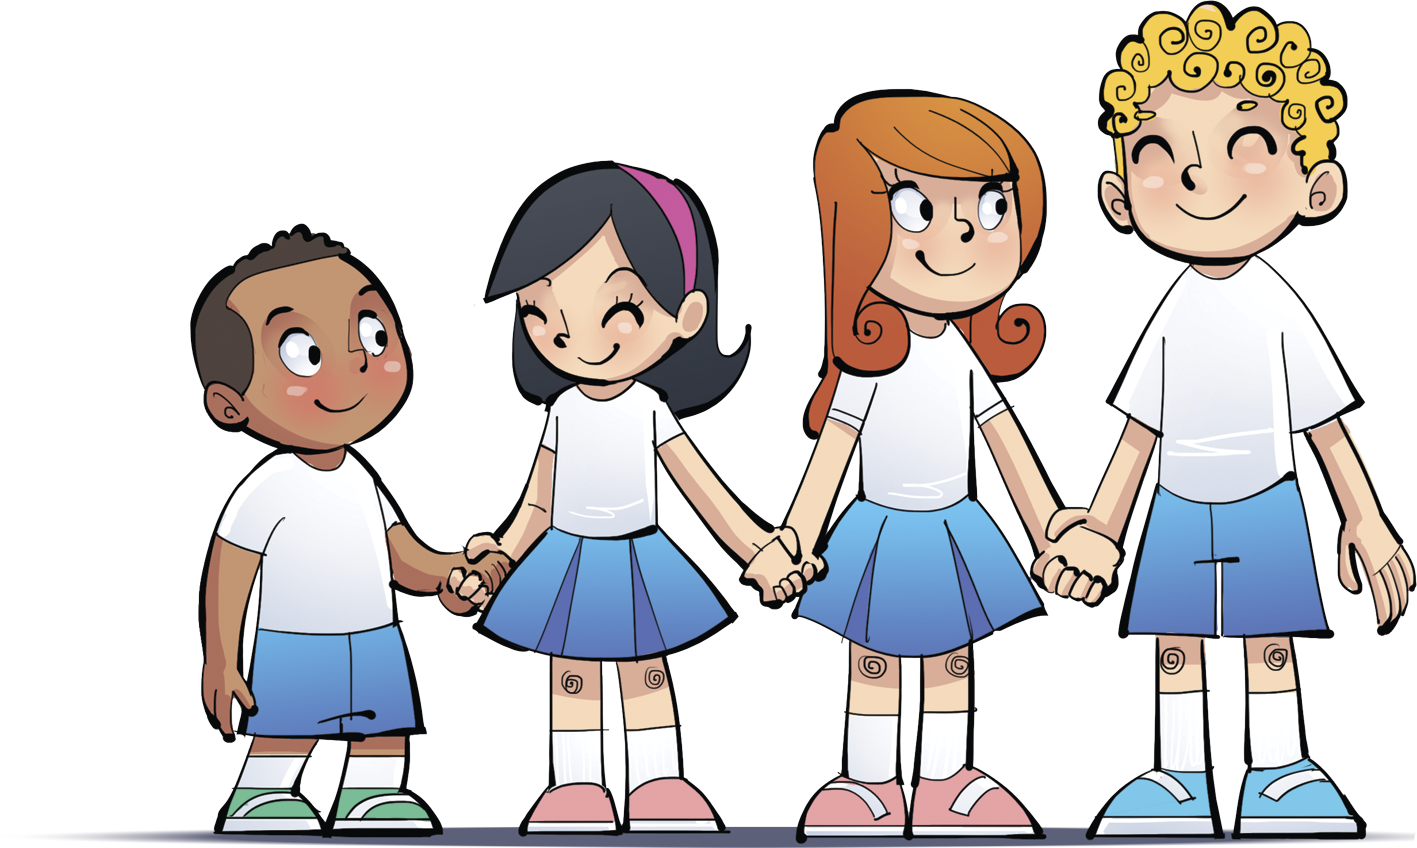 Ilustração. Grupo com 4 crianças de alturas diferentes e de mãos dadas, elas estão uma ao lado da outra, organizadas da esquerda para a direita, da mais baixa para a mais alta: menino, menina, menina, menino.